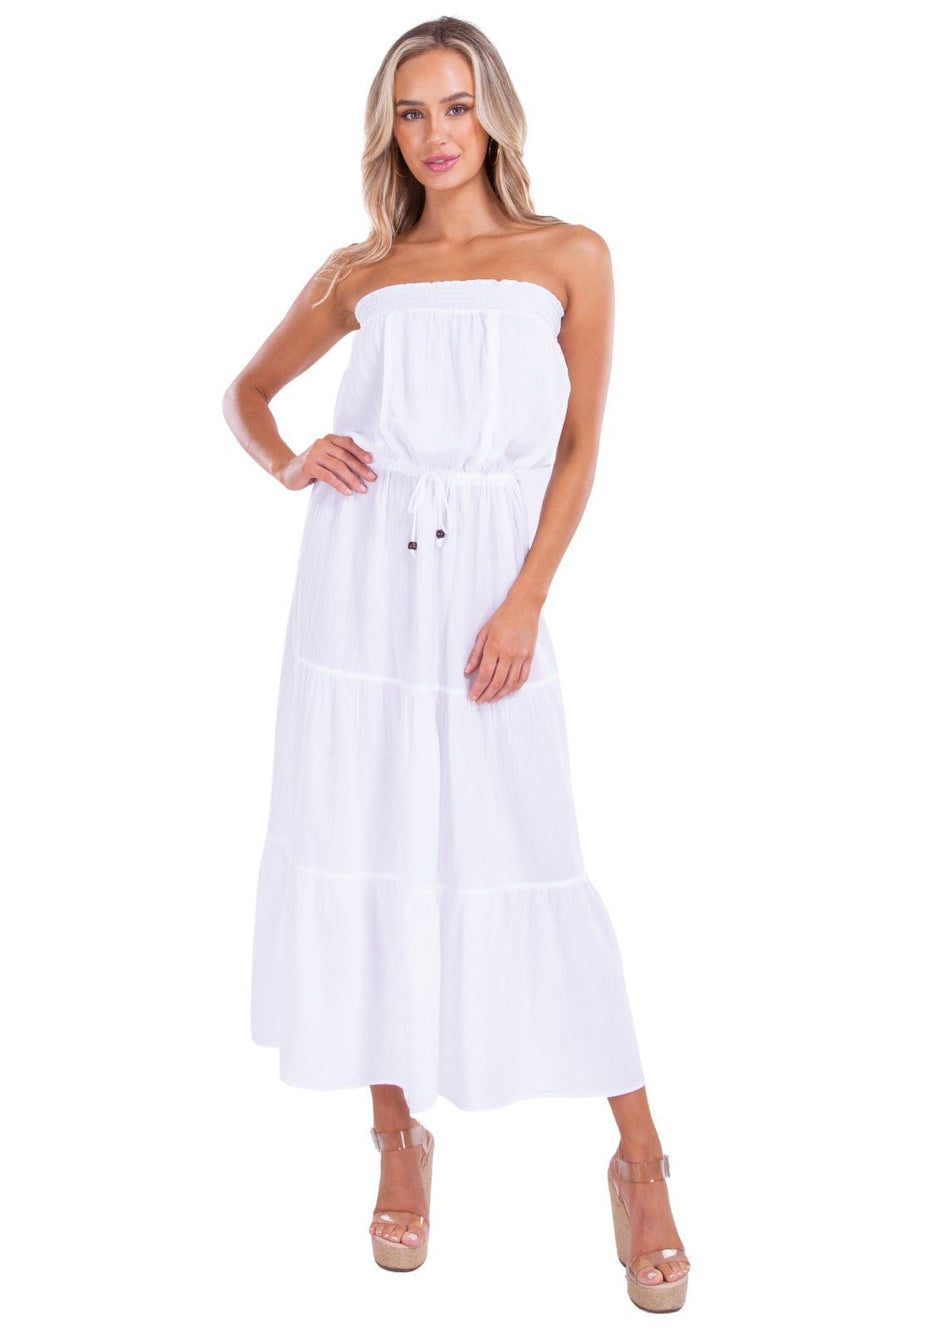 'Cielo' White Cotton Dress - Seaspice Resort Wear